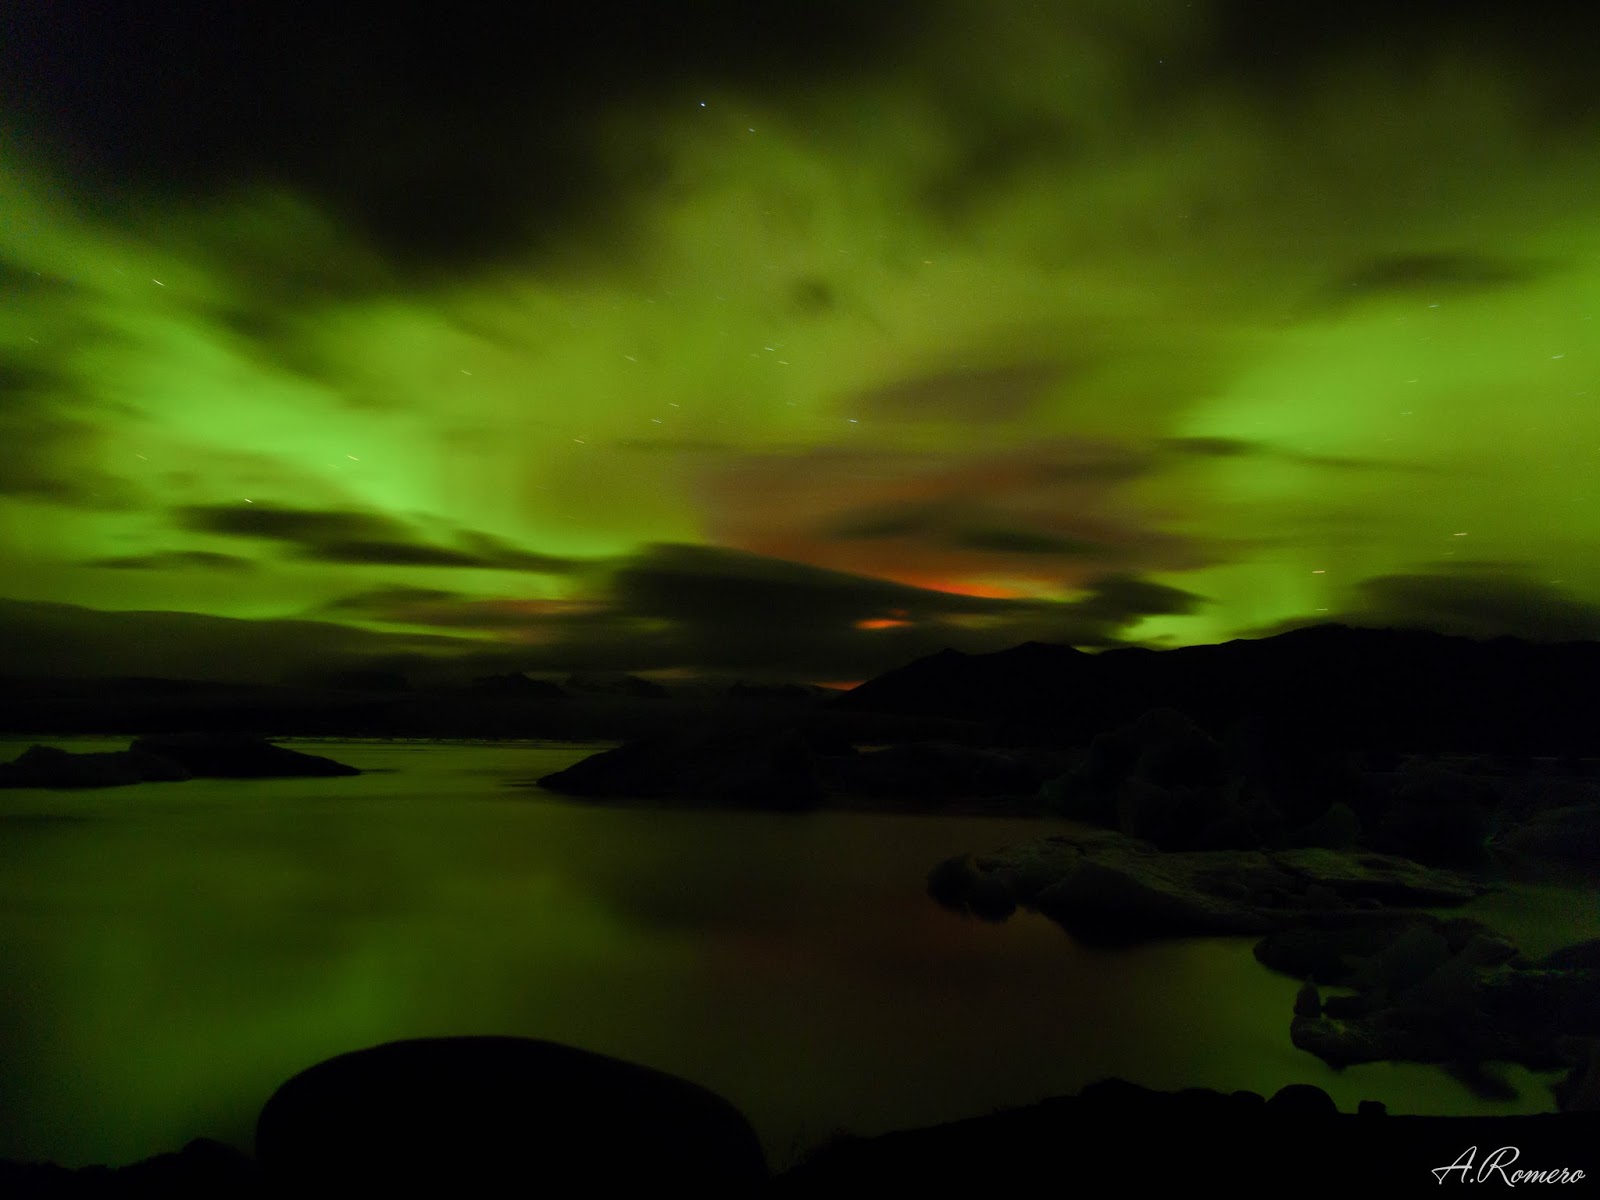 Una aurora boreal tiñe el cielo de verde reflejándose en la laguna glaciar Jökulsárlón. El resplandor anaranjado del horizonte lo produce el volcán Bárðarbunga que se encuentra activo bajo el mayor glaciar de Islandia.